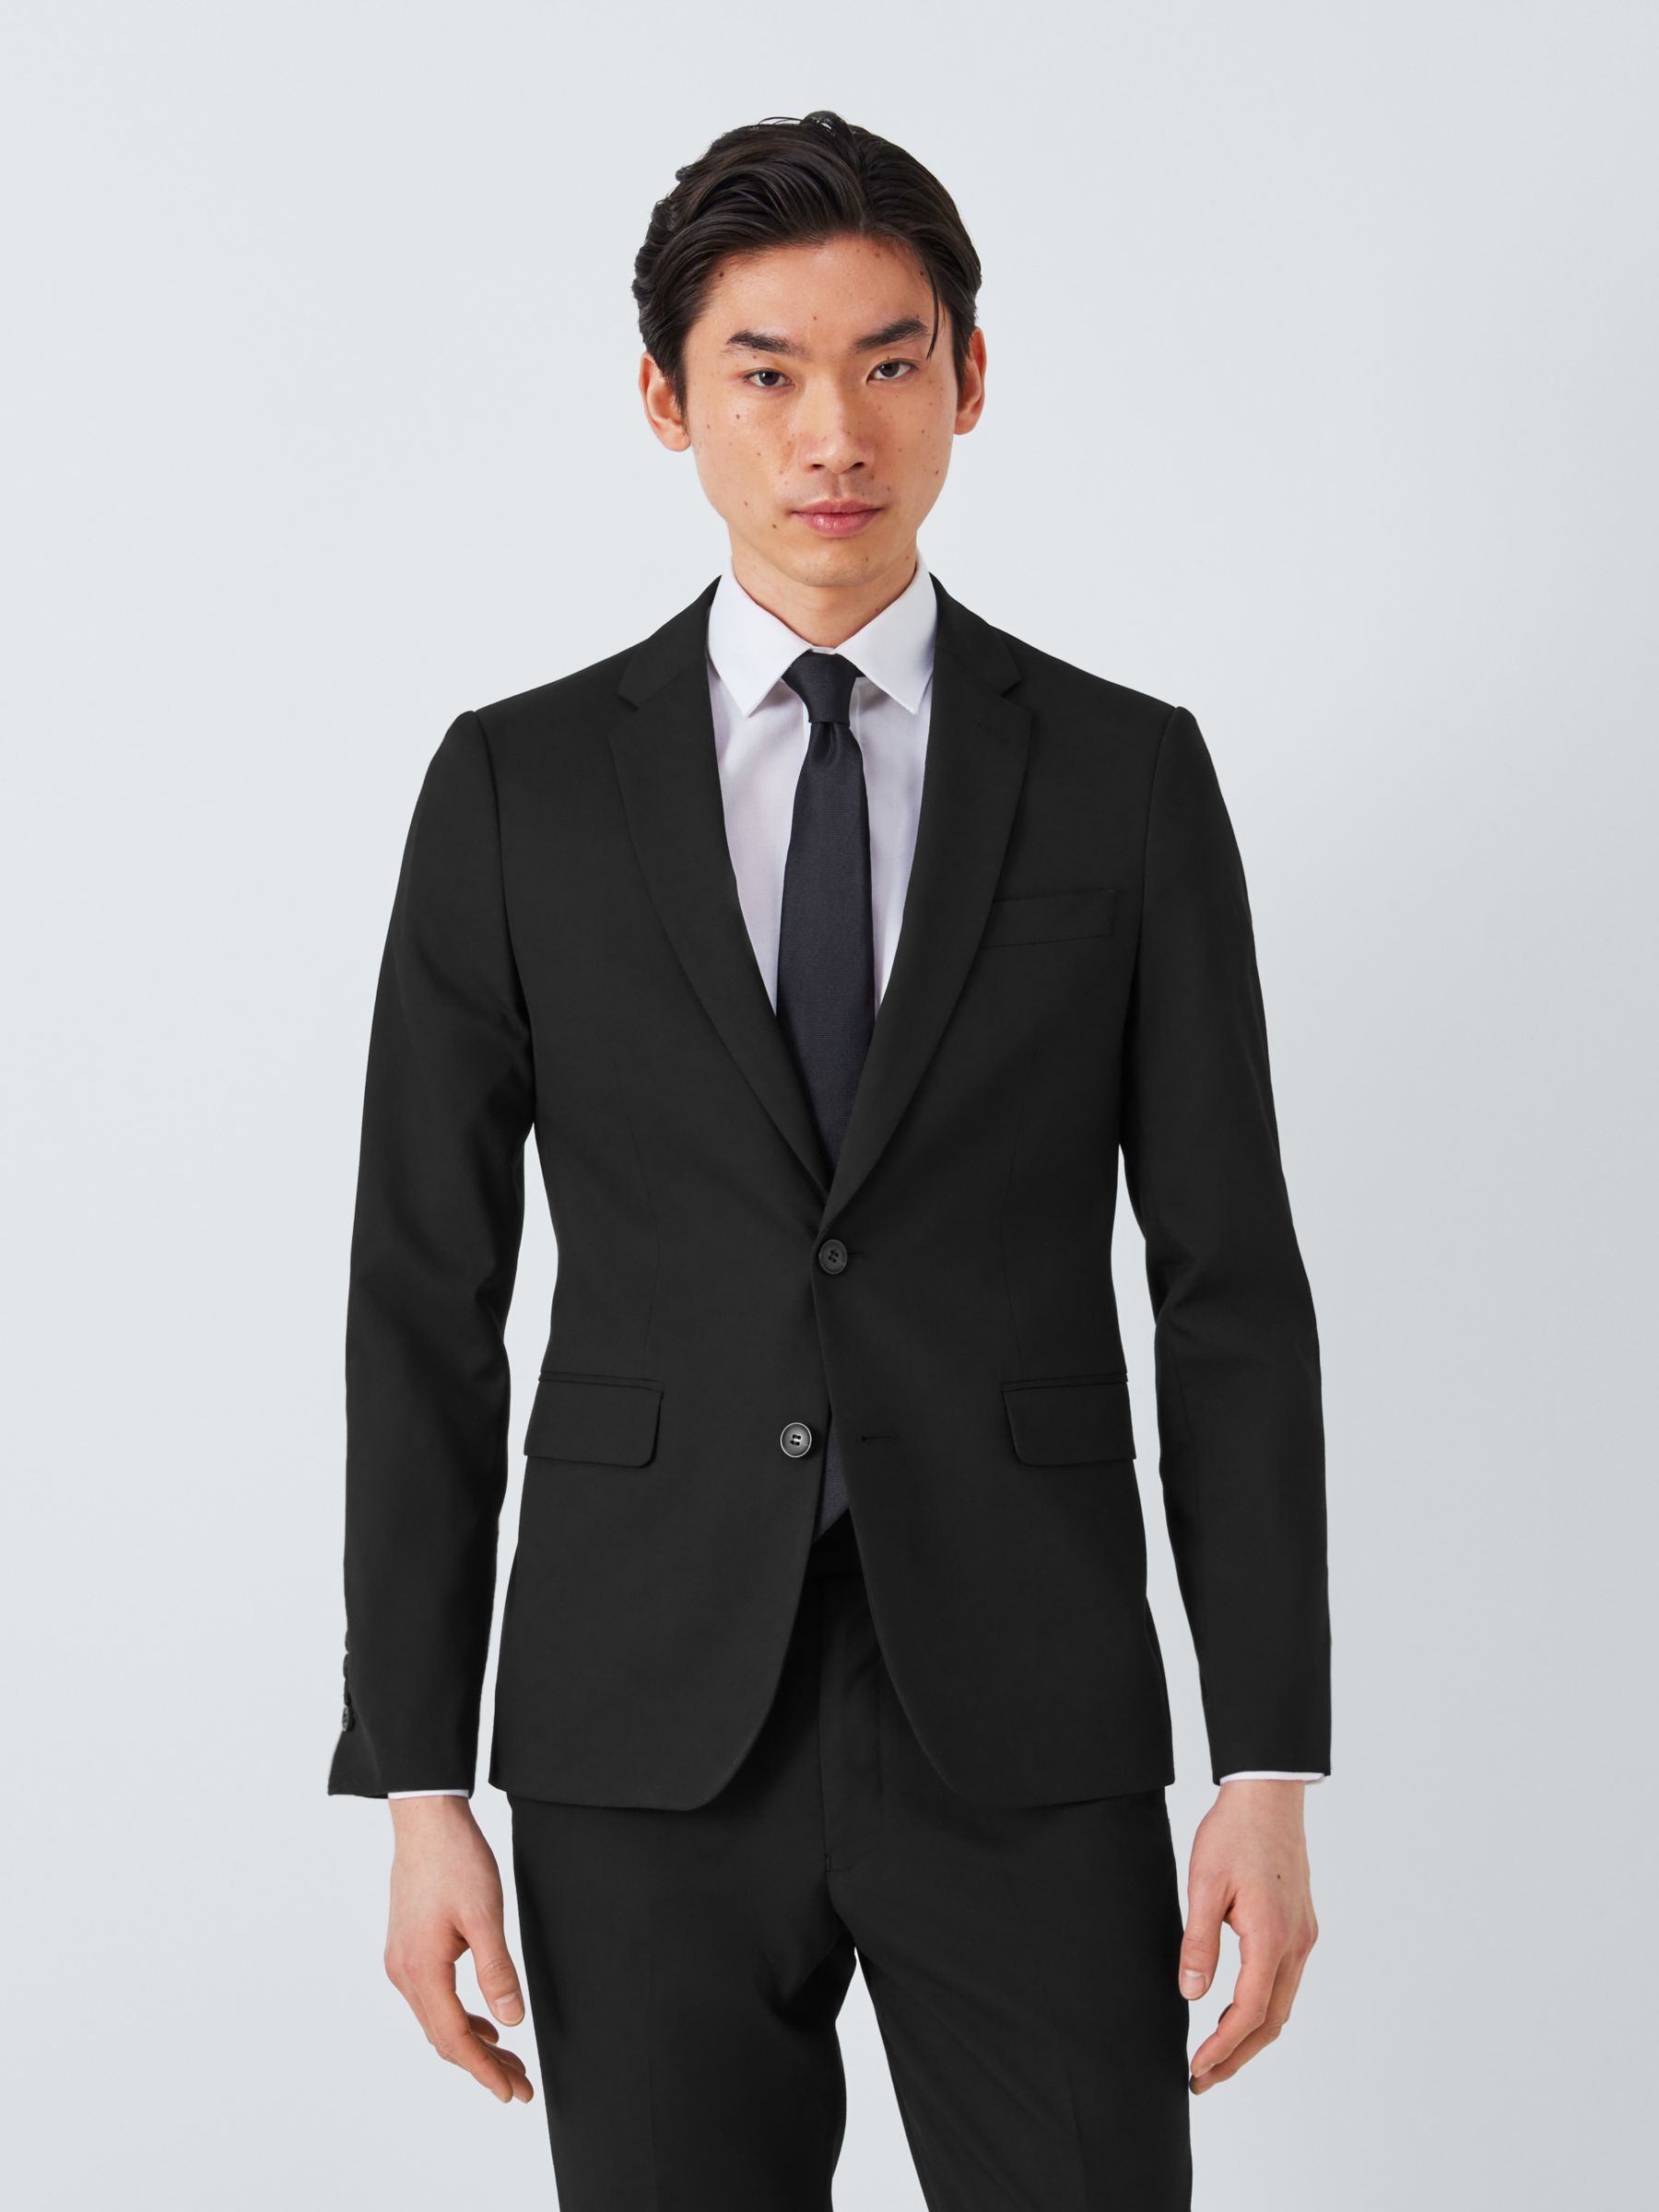 Buy John Lewis Slim Fit Starter Suit Jacket Online at johnlewis.com